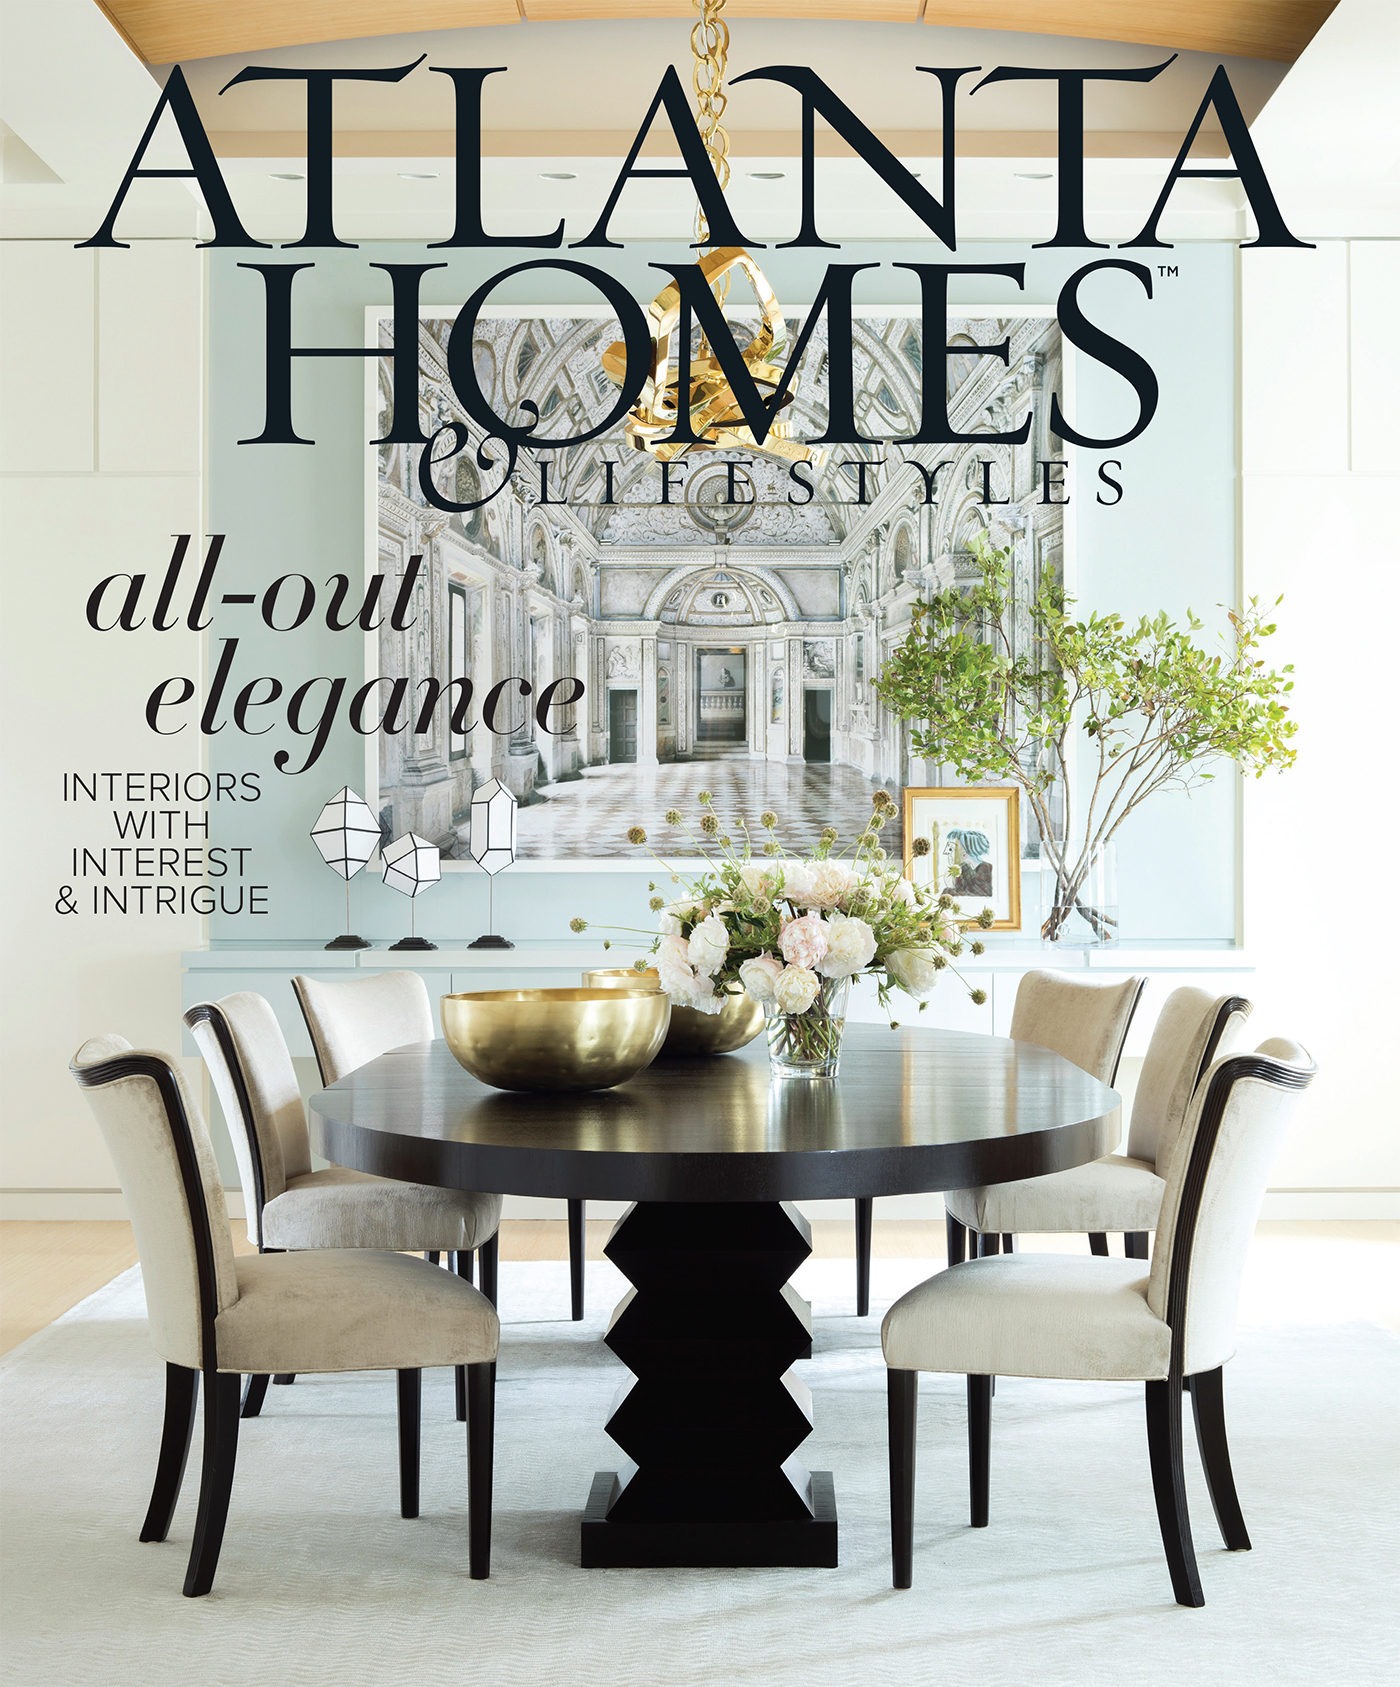 Atlanta Homes and Lifestyles